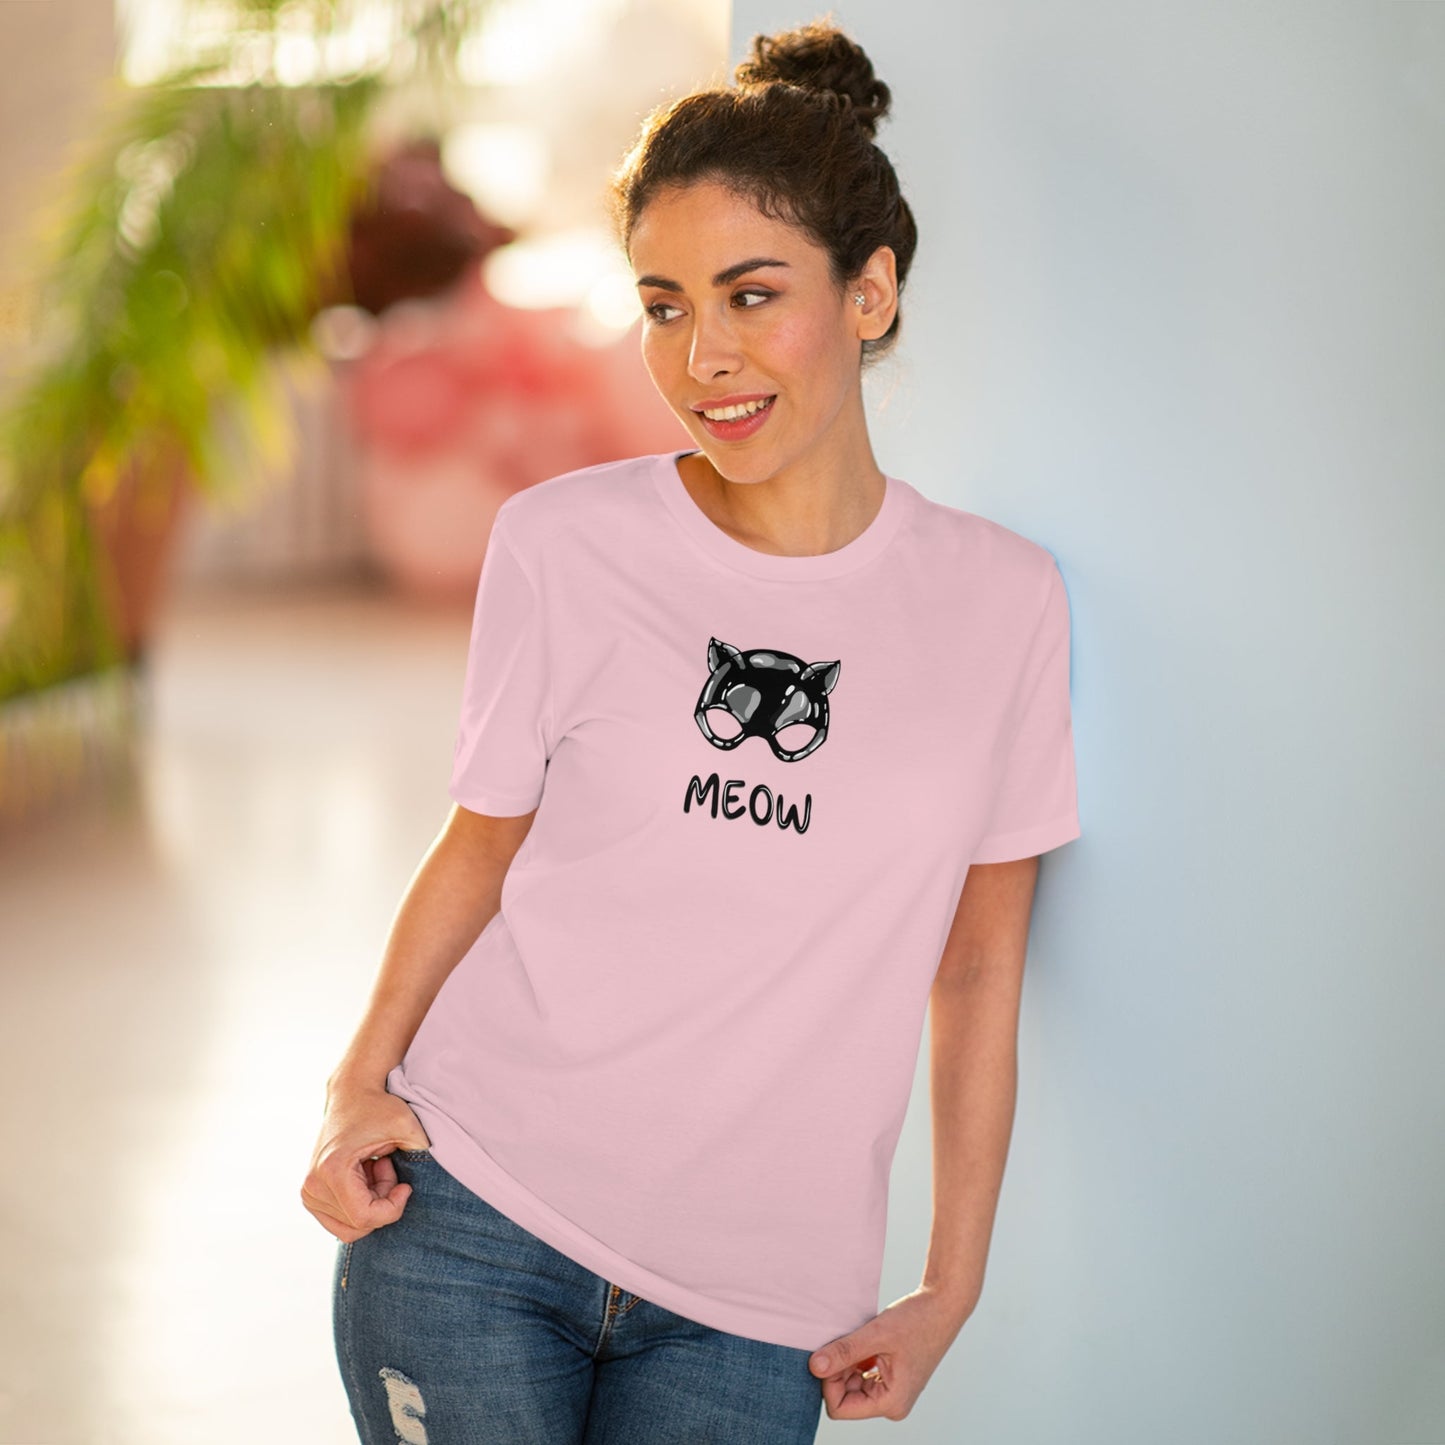 Organic Cotton 'Meow' Funny Cat T-shirt - Fun Cat T shirt